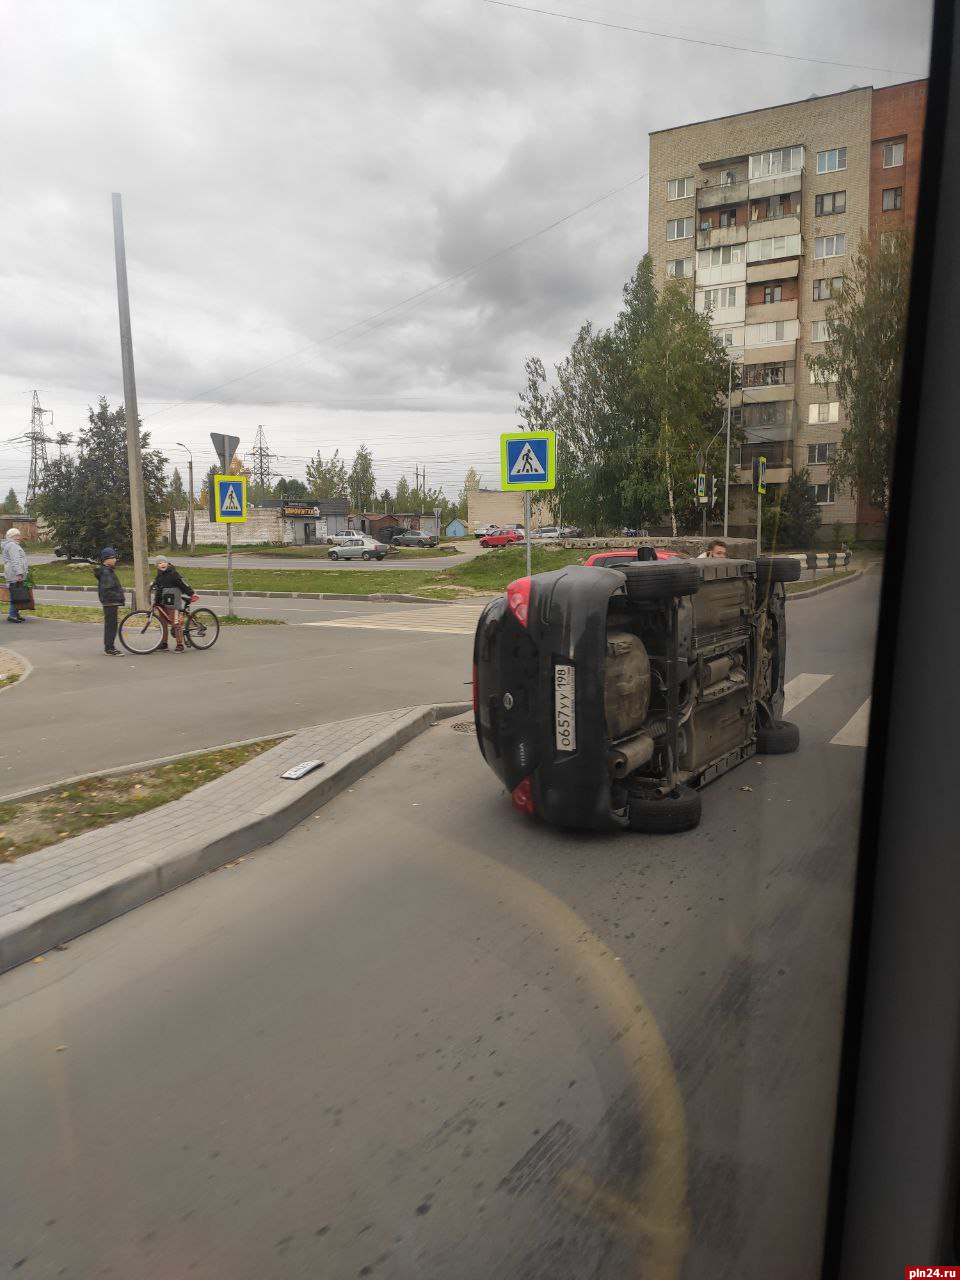 Автомобиль перевернулся на бок в результате ДТП на Запсковье. ФОТО